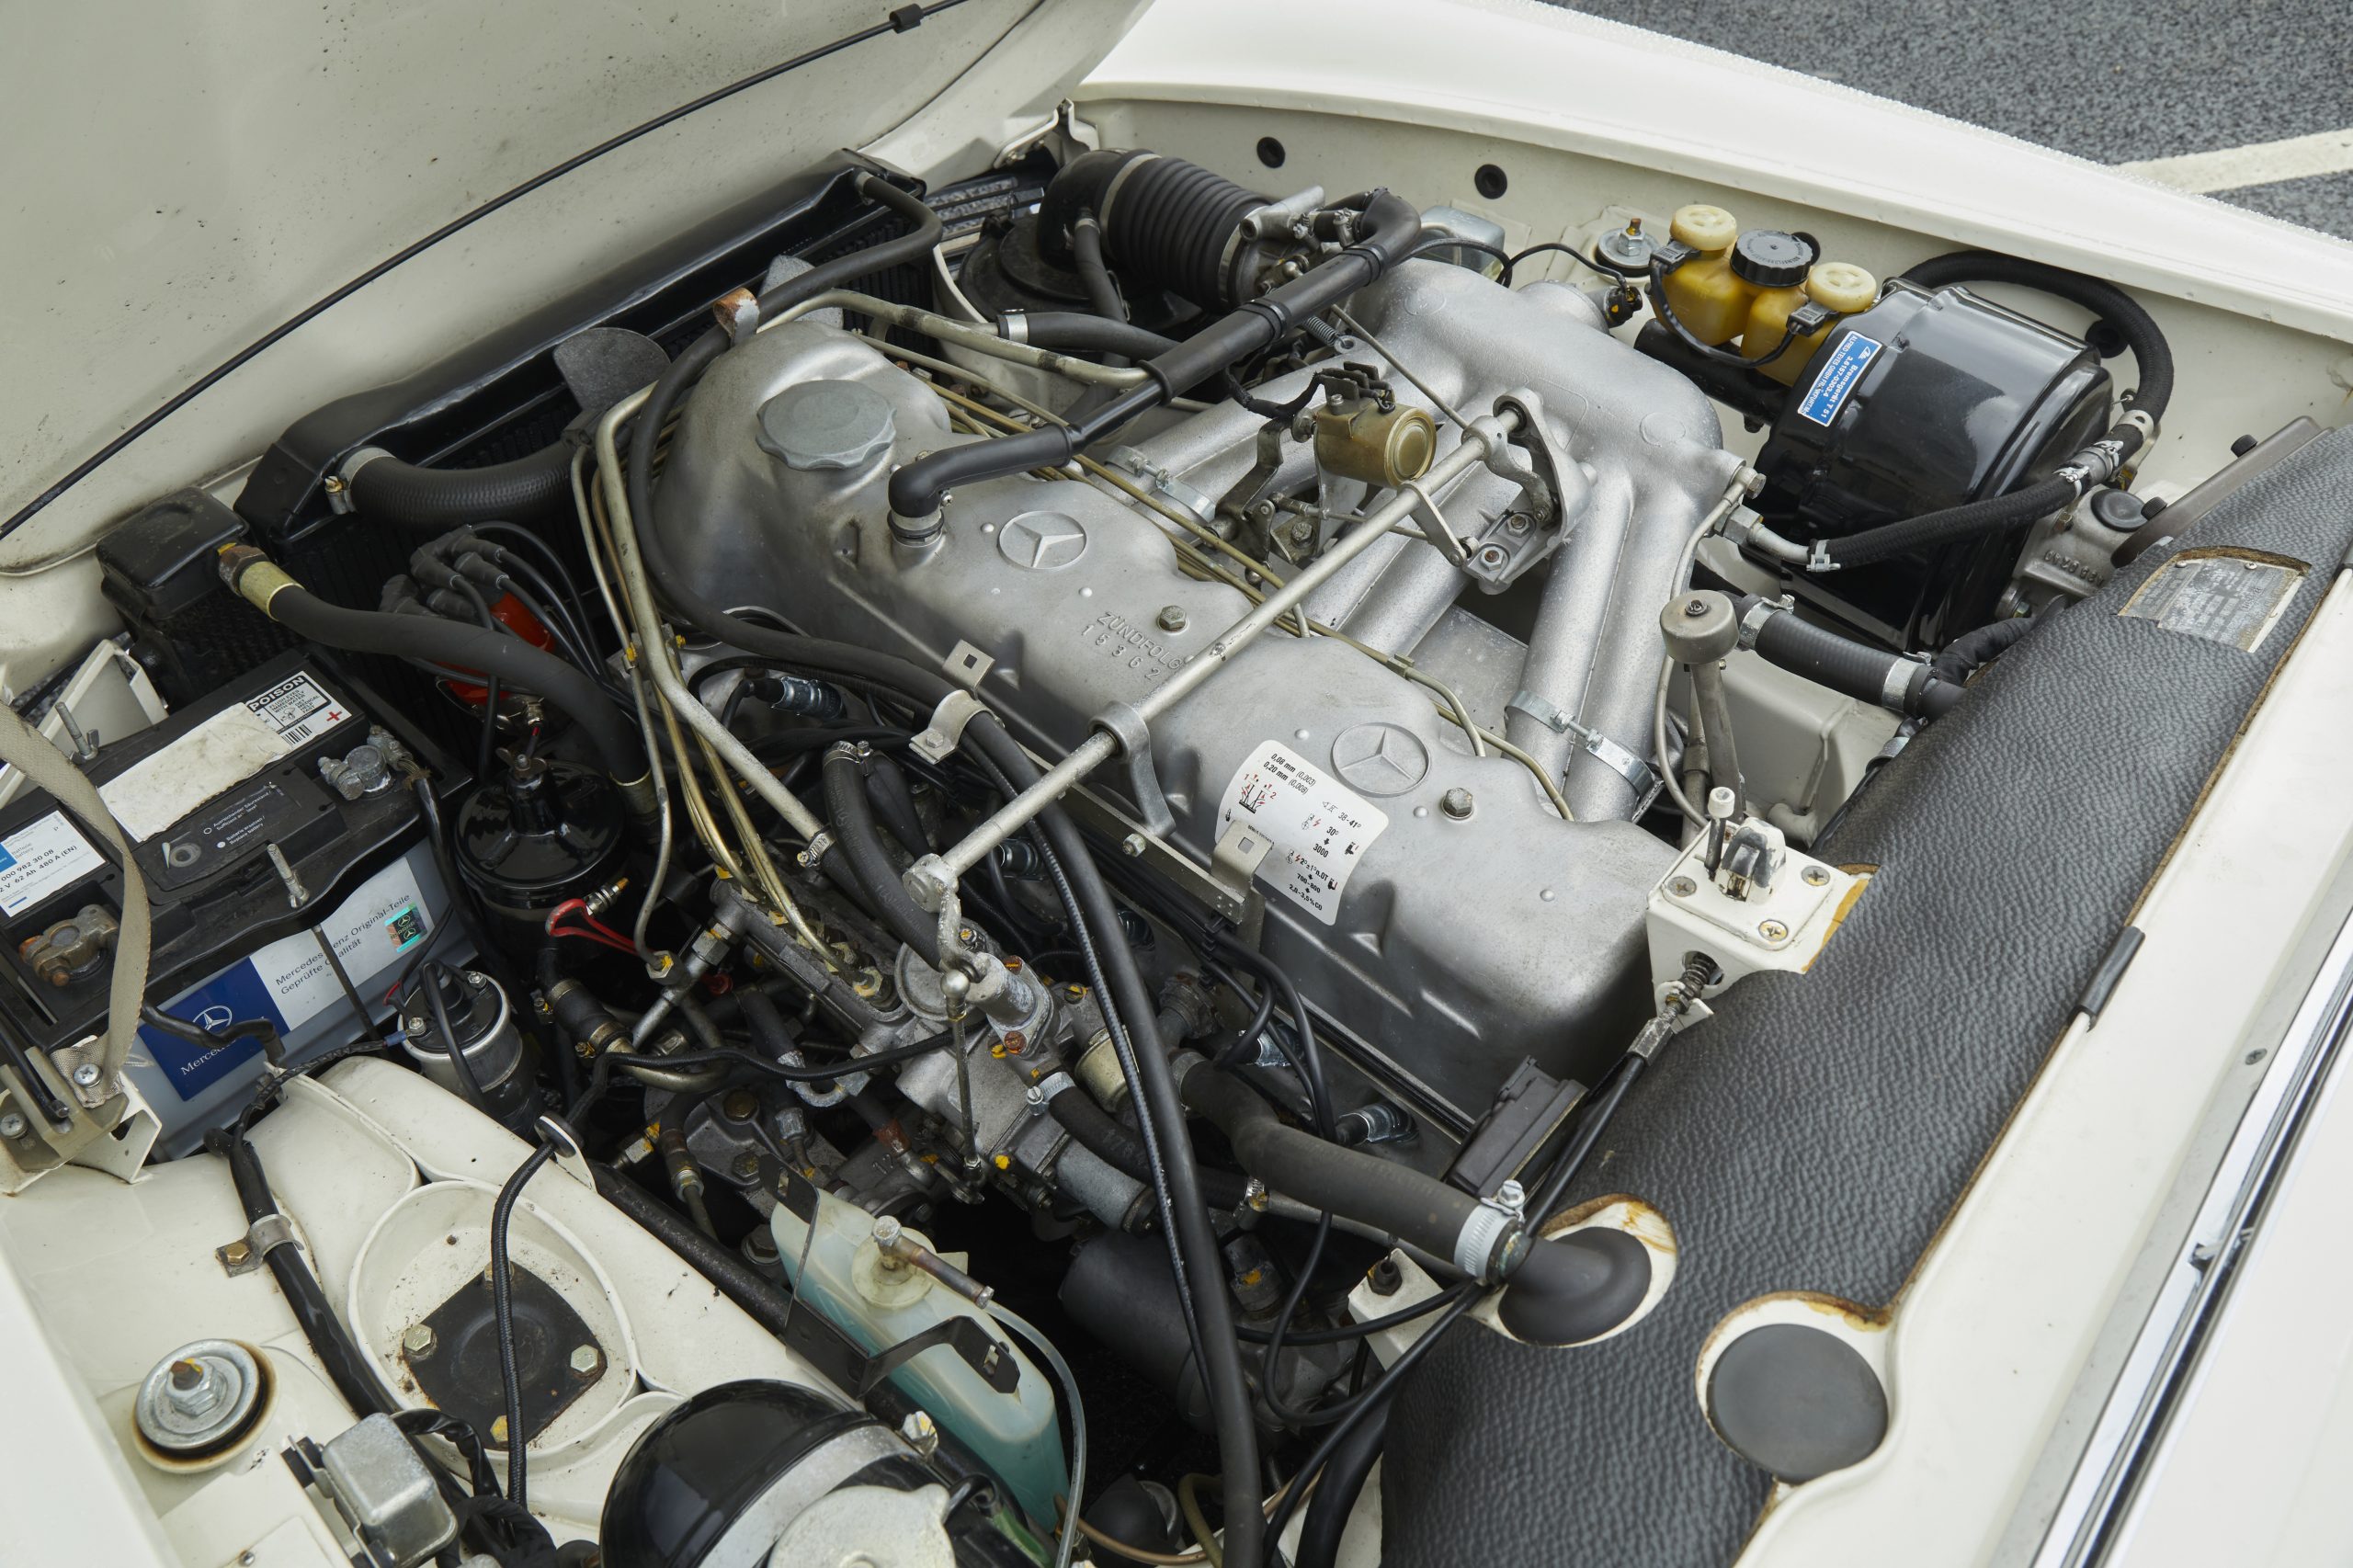 Mercedes SL Pagoda 280 engine